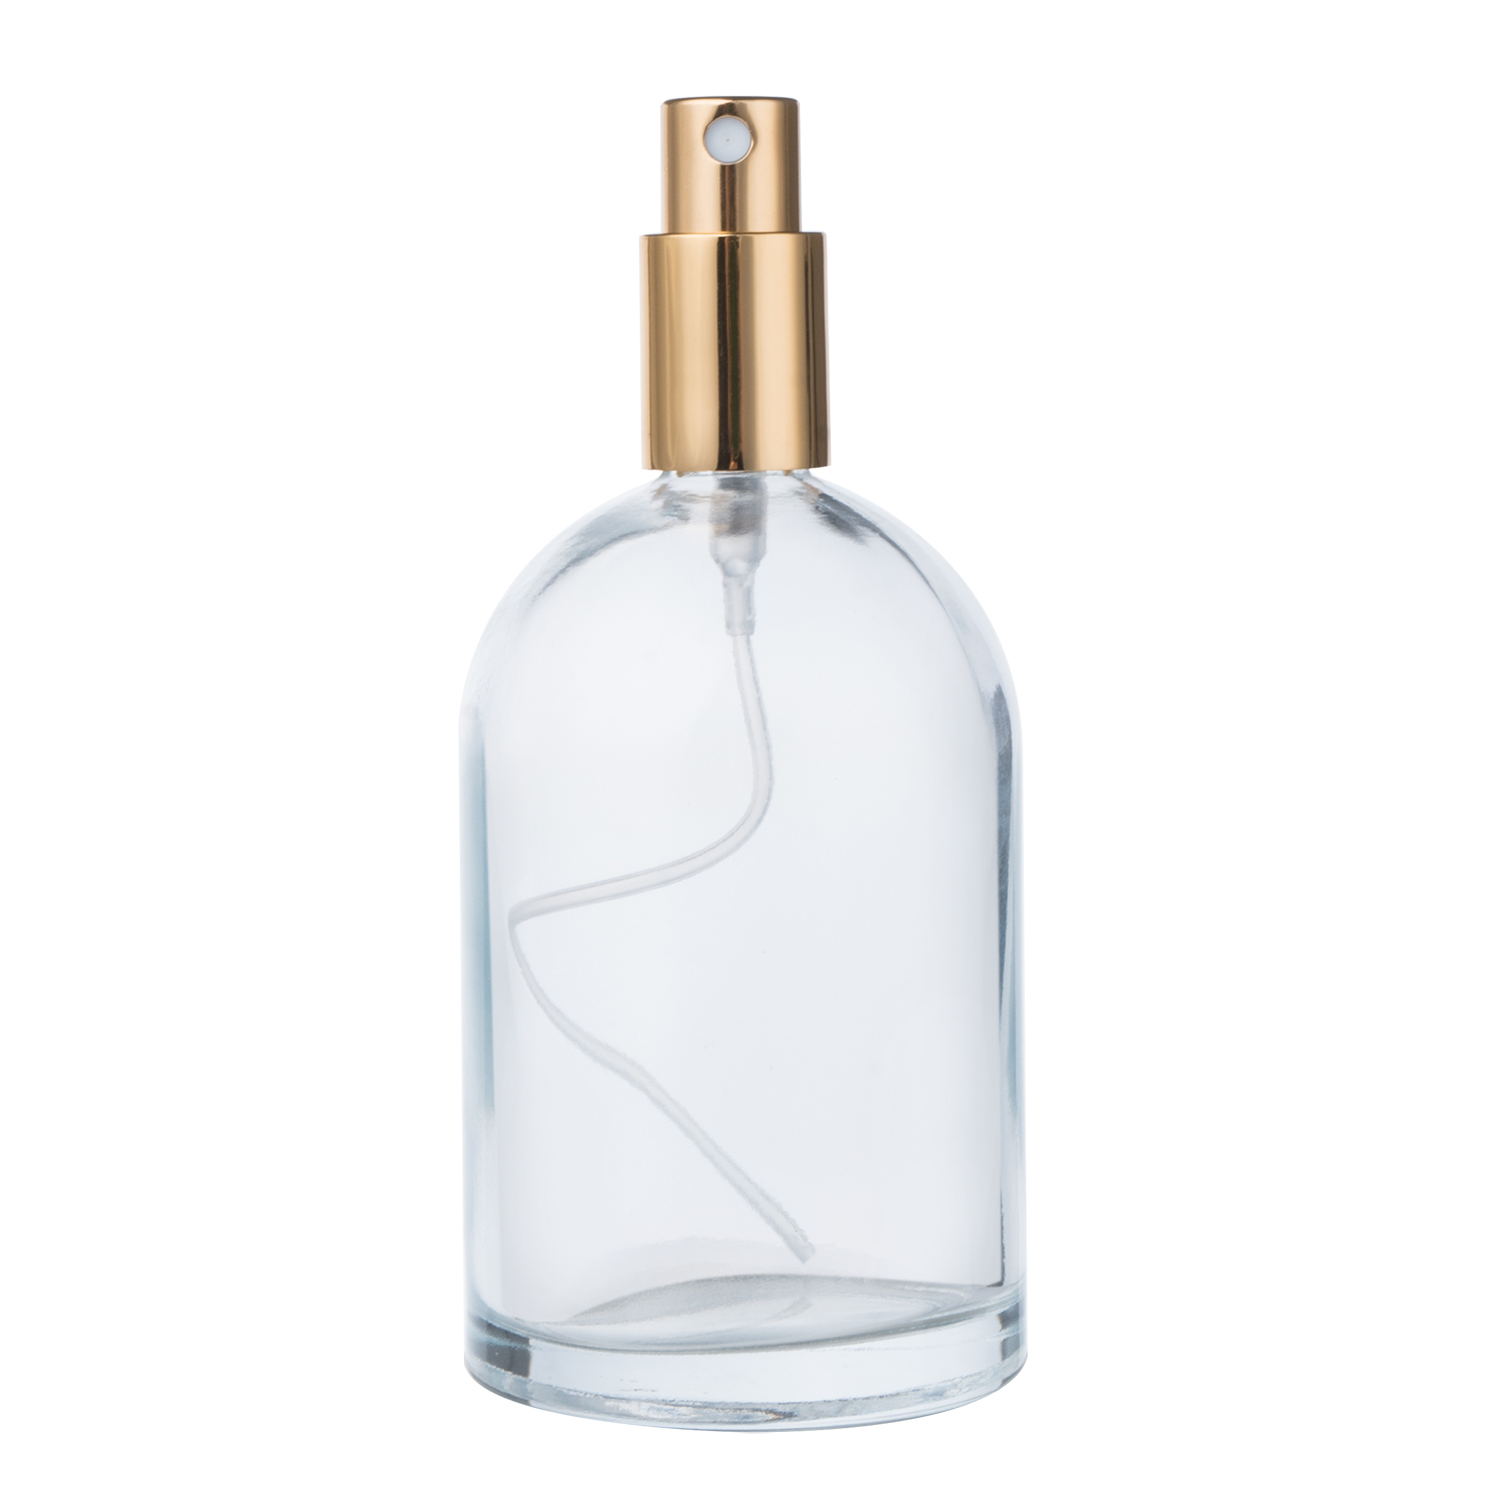 100ml Glass Perfume Bottle with UV Cap Travel Perfume Bottle